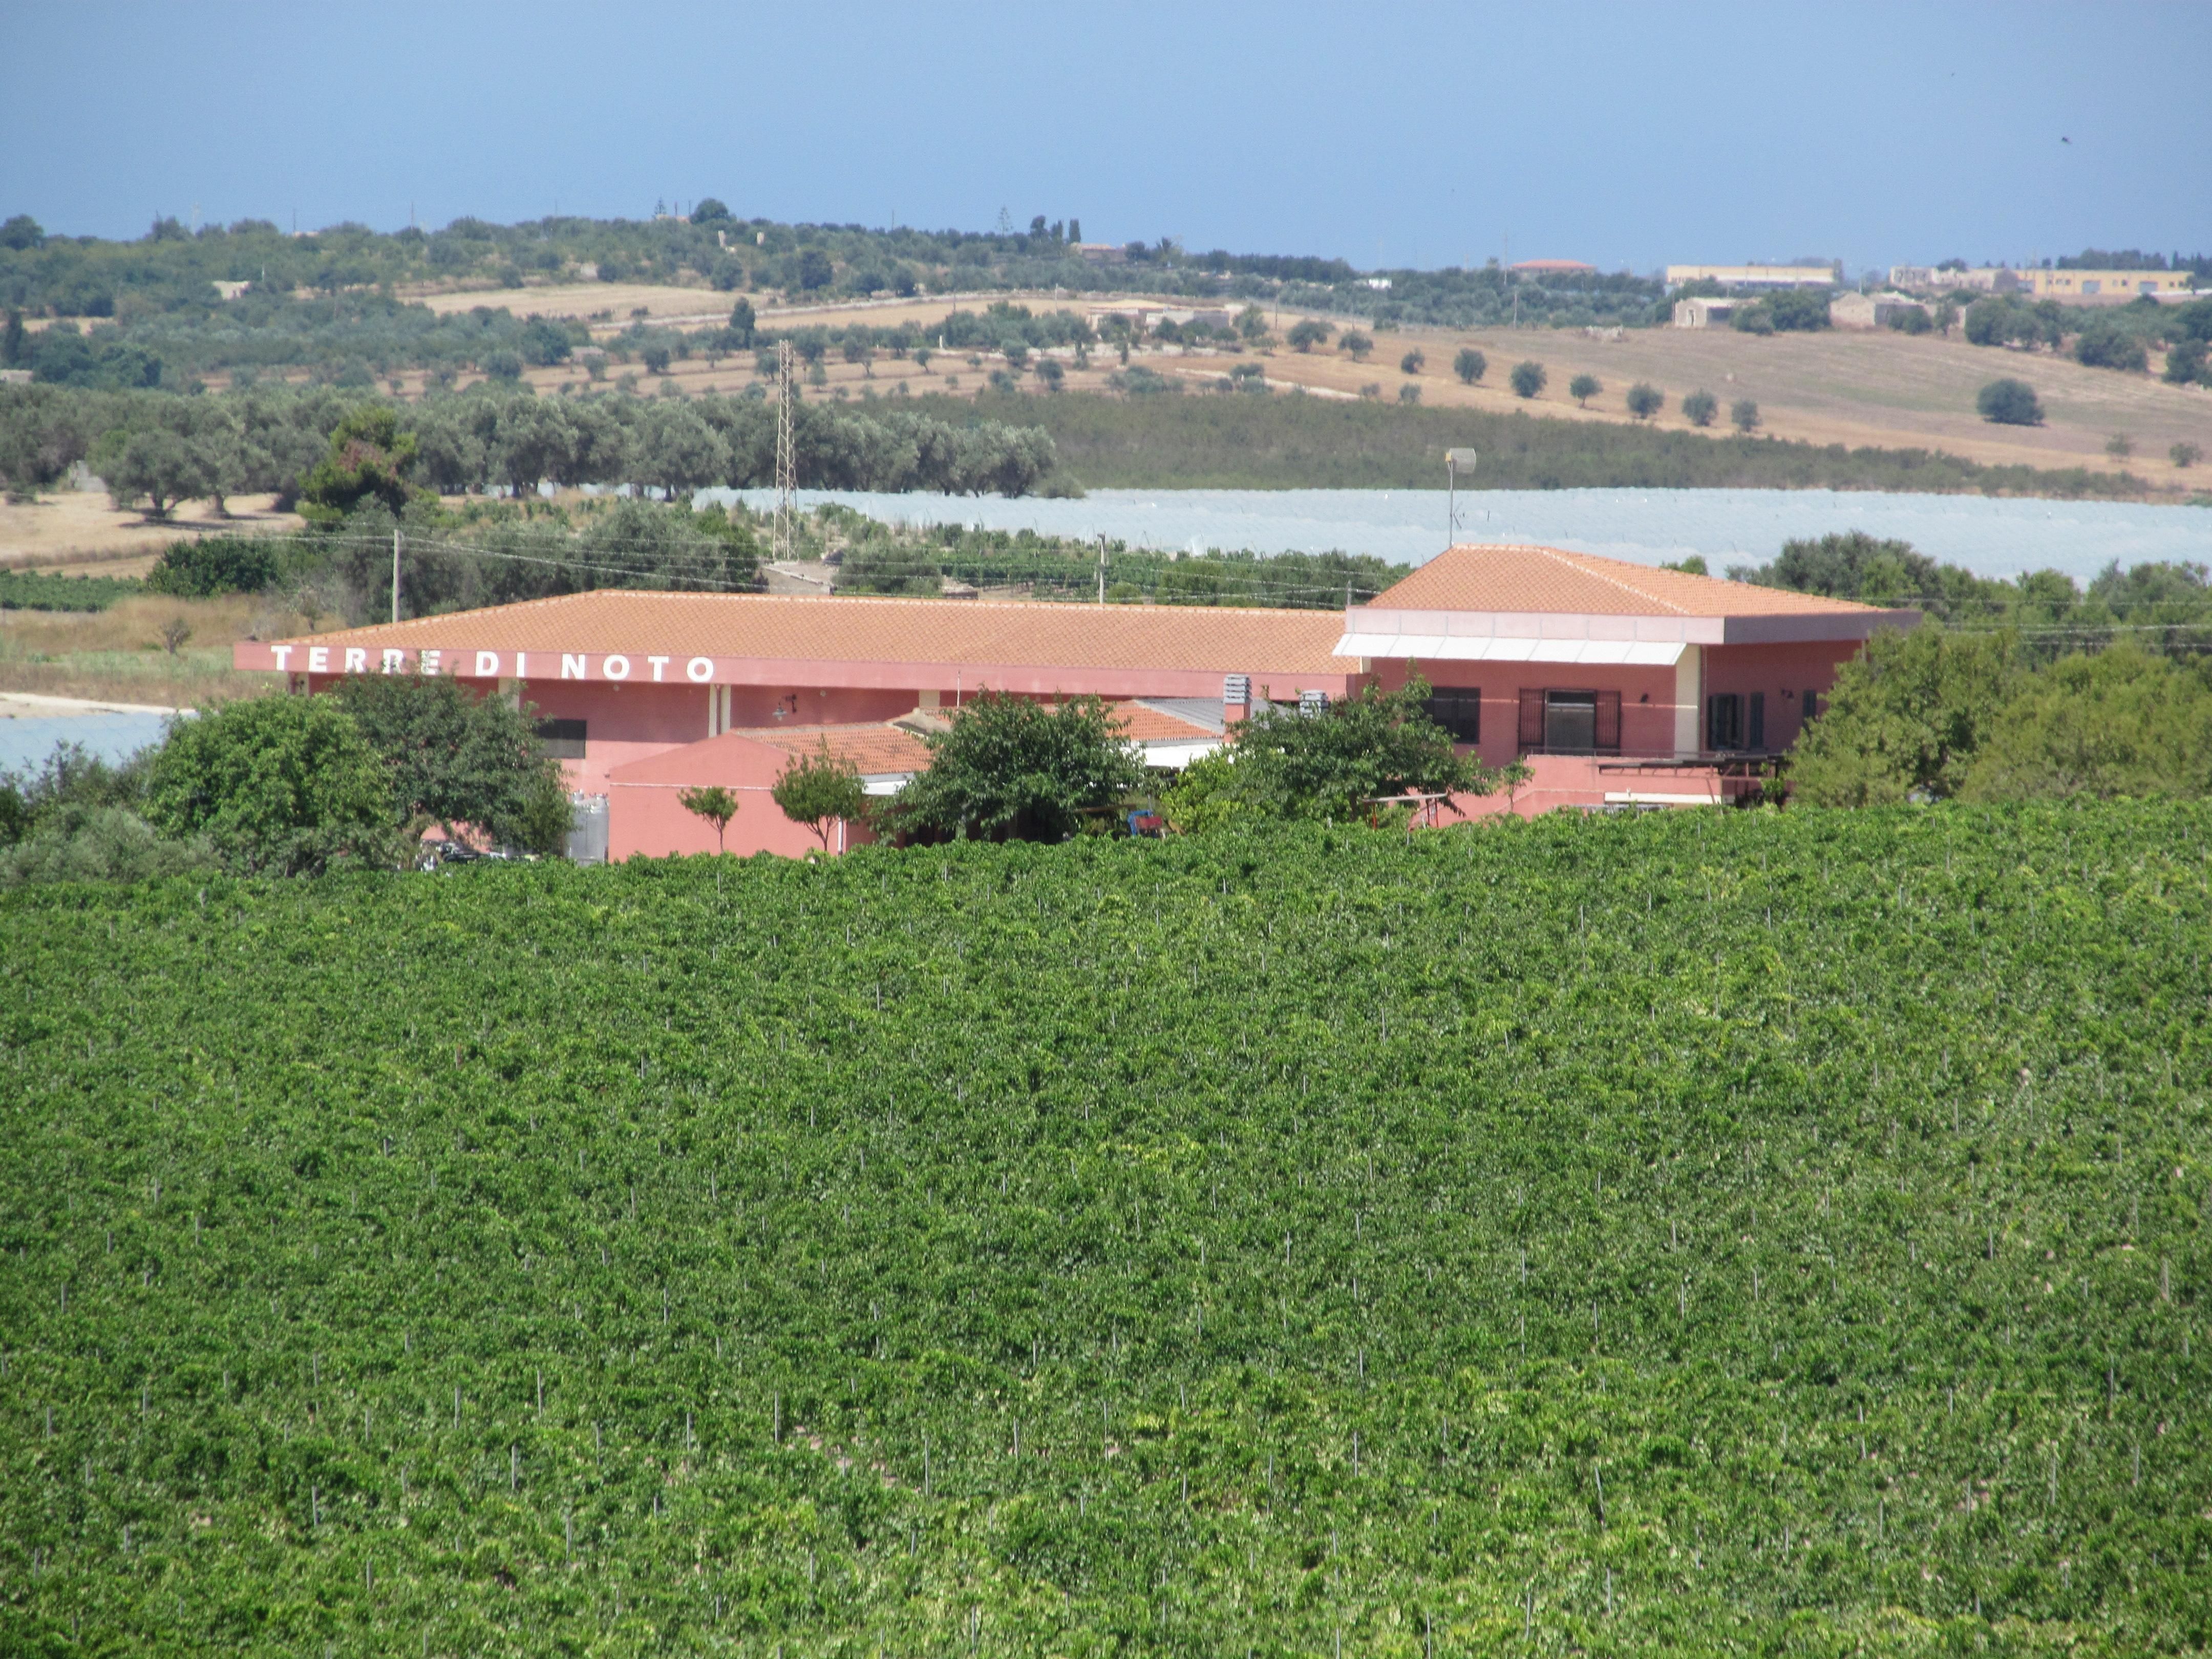 Winery Terre di Noto